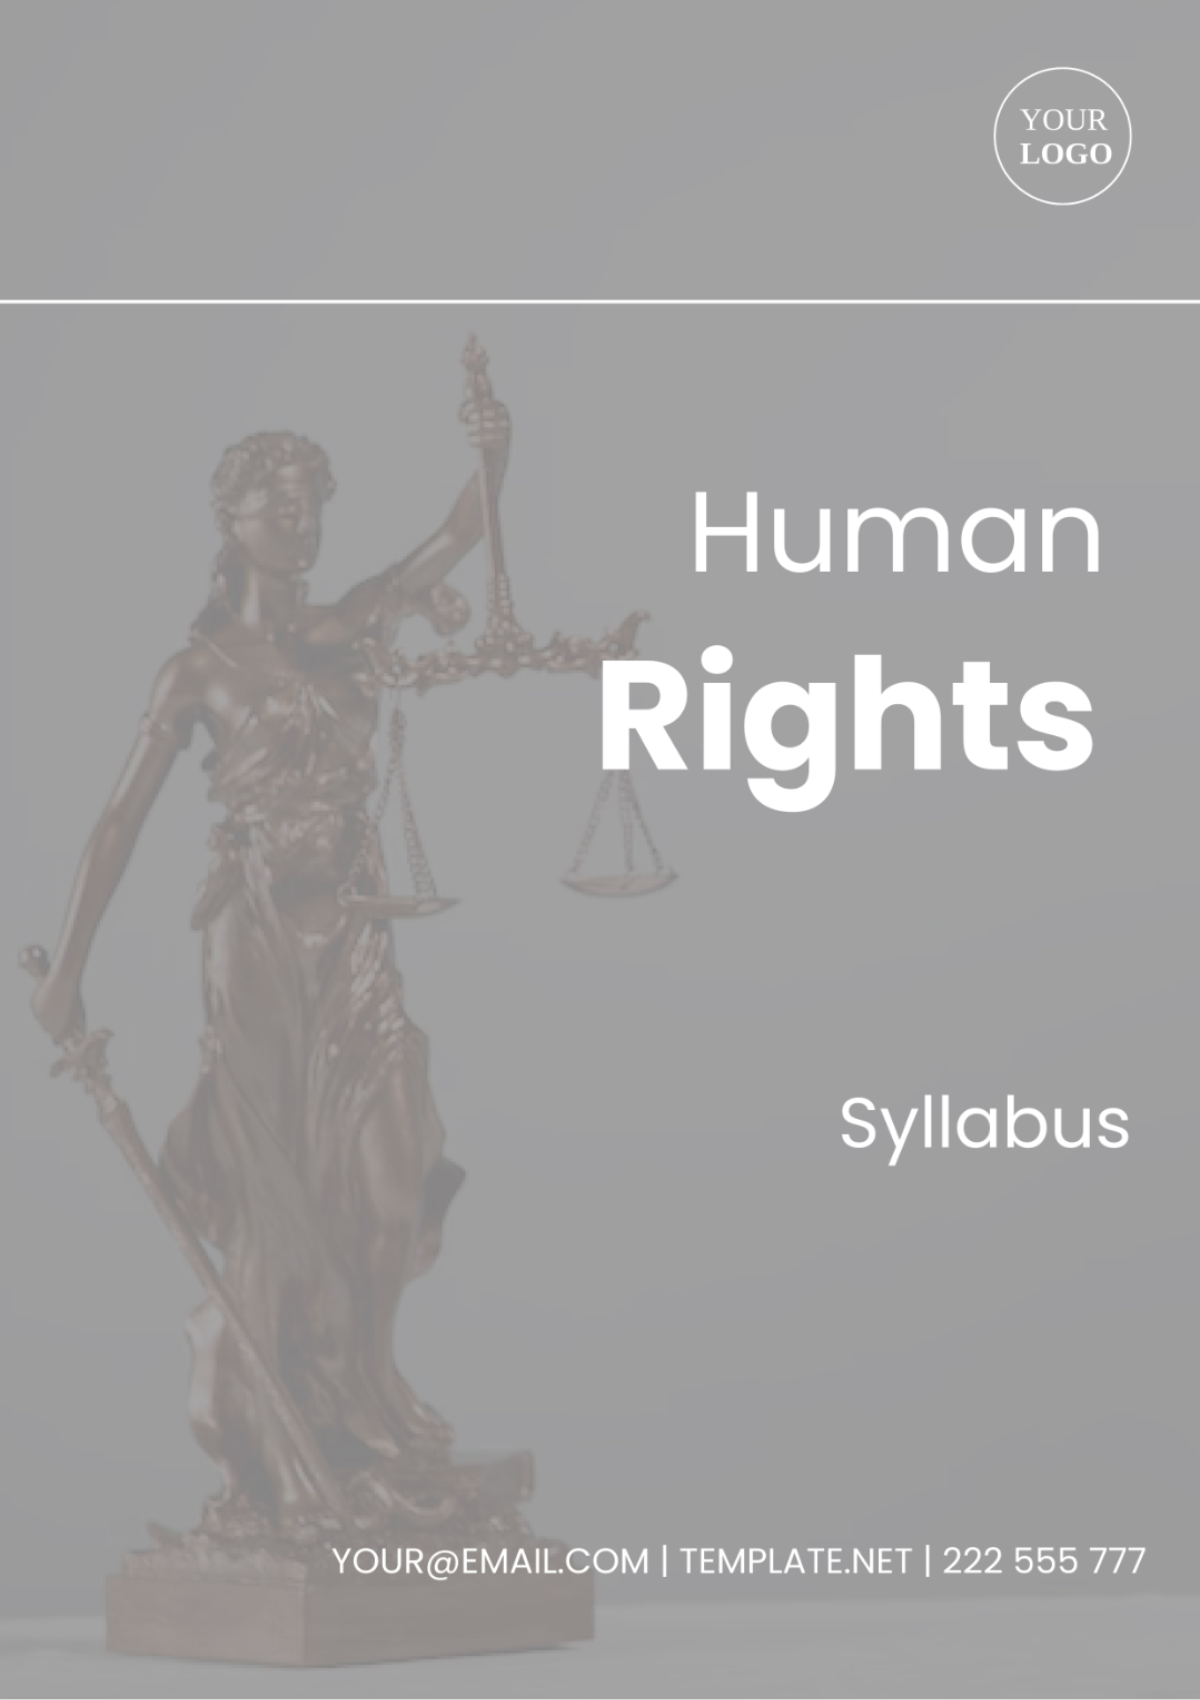 Human Rights Syllabus Template